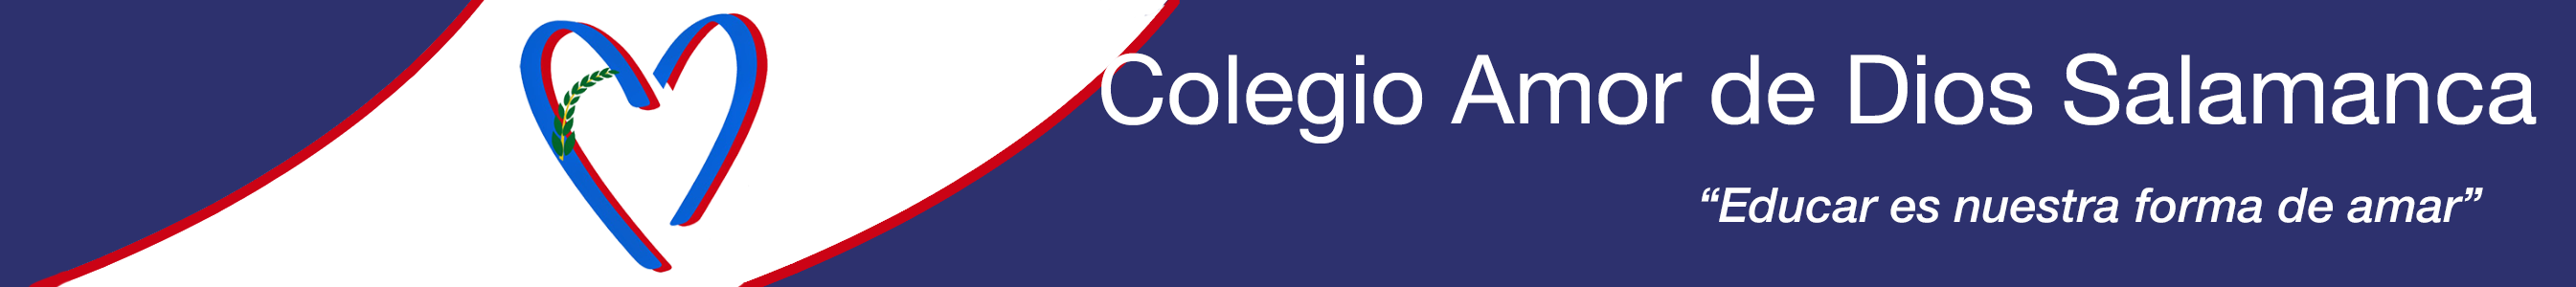 Logo Colegio Amor de Dios